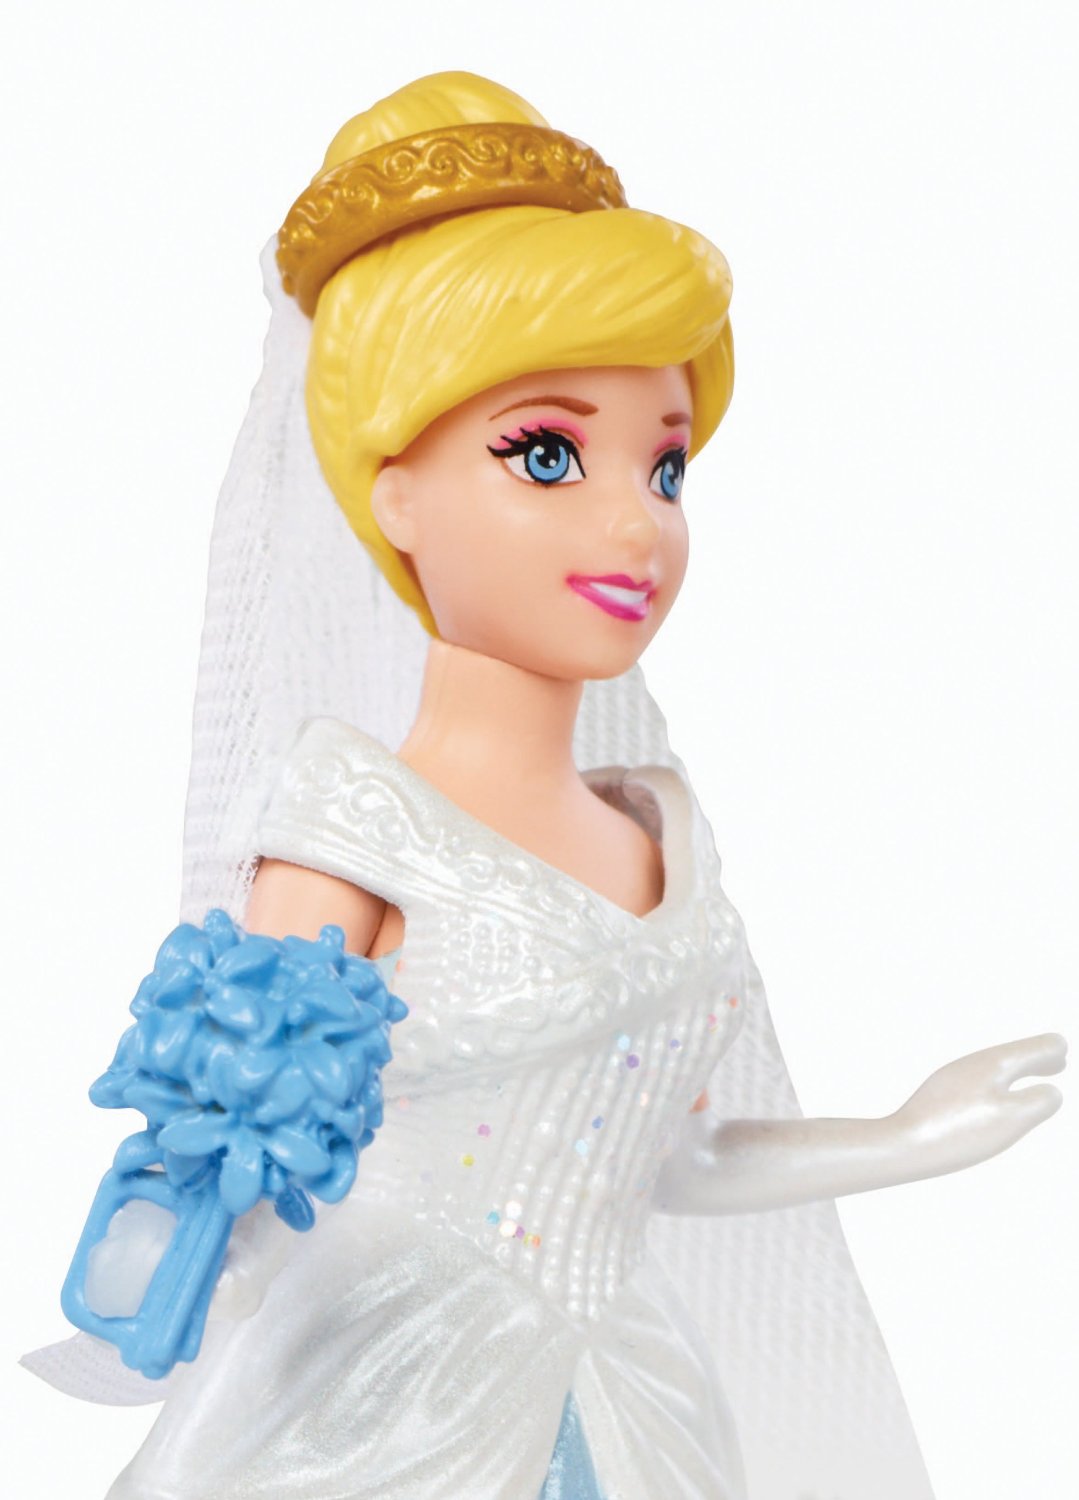 Набор мини-кукол Сказочная свадьба - Золушка  